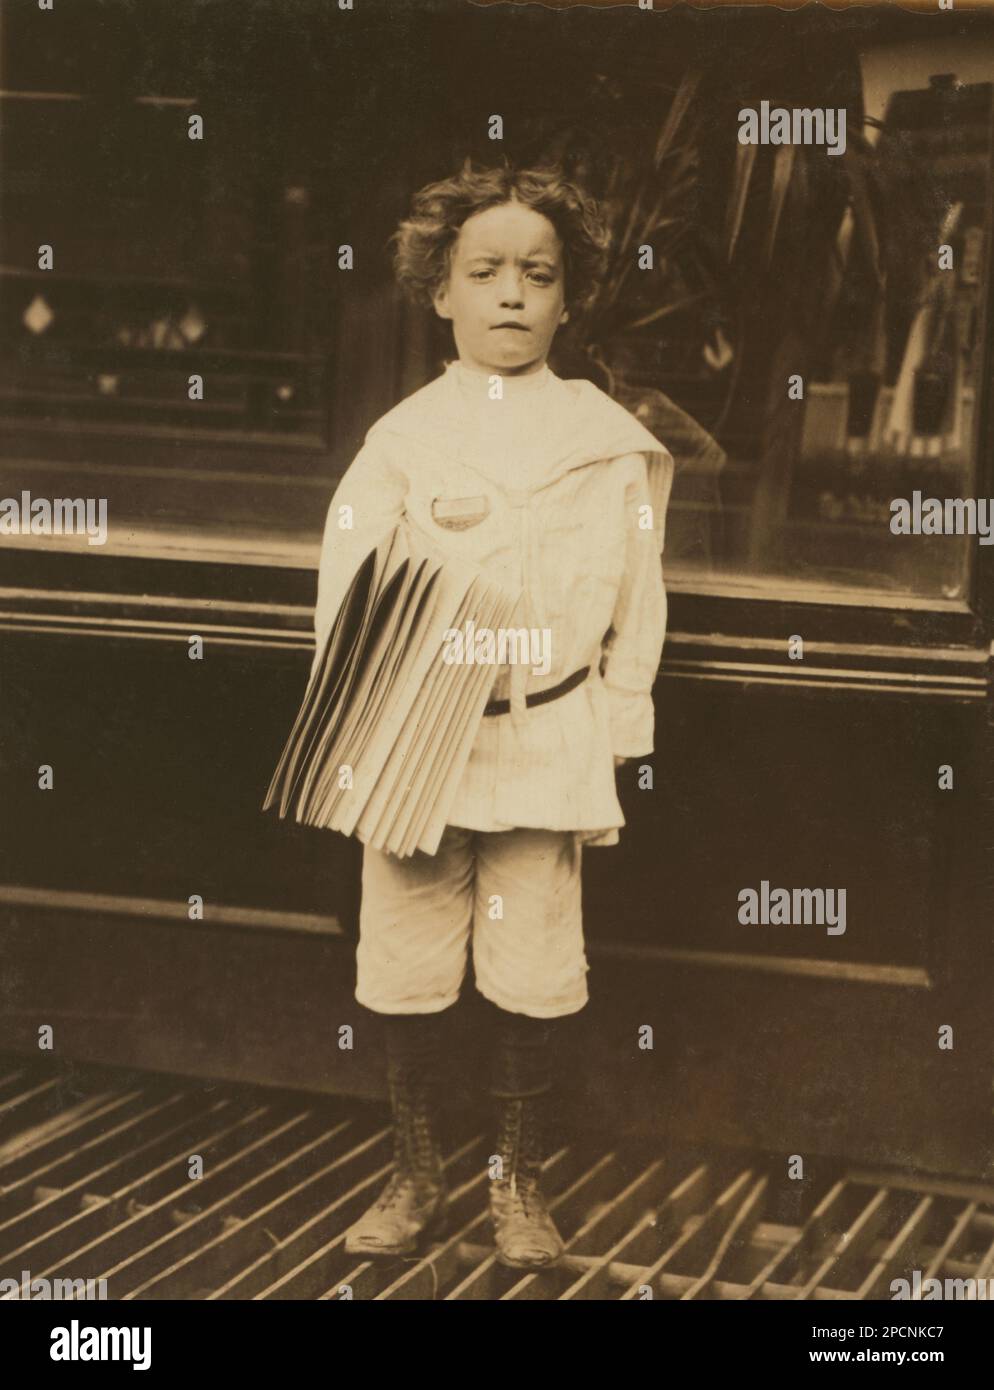 1910 , juli, NEW YORK , NEW YORK , USA : Jo. Lehman, ein 7-jähriger Zeitungsjunge. 824 Third Avenue, New York City. Er hat in diesem Friseursalon verkauft. Ich fragte ihn nach dem Abzeichen, das er trug. „Oh! Das ist mein bruder', sagte er. - NEWSBOYS , Fotos von LEWIS HINE ( 1874 - 1940 ) - - NEWSBOYS - BAMBINI -- LAVORATORI - BAMBINO - KINDERARBEITER - FABRIK - KINDHEIT - KINDHEIT - KIDNIEN - LAVORO MINORILE - LAVORO - ARBEIT - LAVORATORE - ARBEITNEHMER - OPERAIO - CLASSE OPERAIA LAVORATRICE - ARBEITERKLASSE - OPERAI - LAVORATORI - LAVORO - UNITI D' AMERICA - FOTO STORICHE - GESCHICHTE - PORTRÄT - Rituto - TEMPI MO Stockfoto